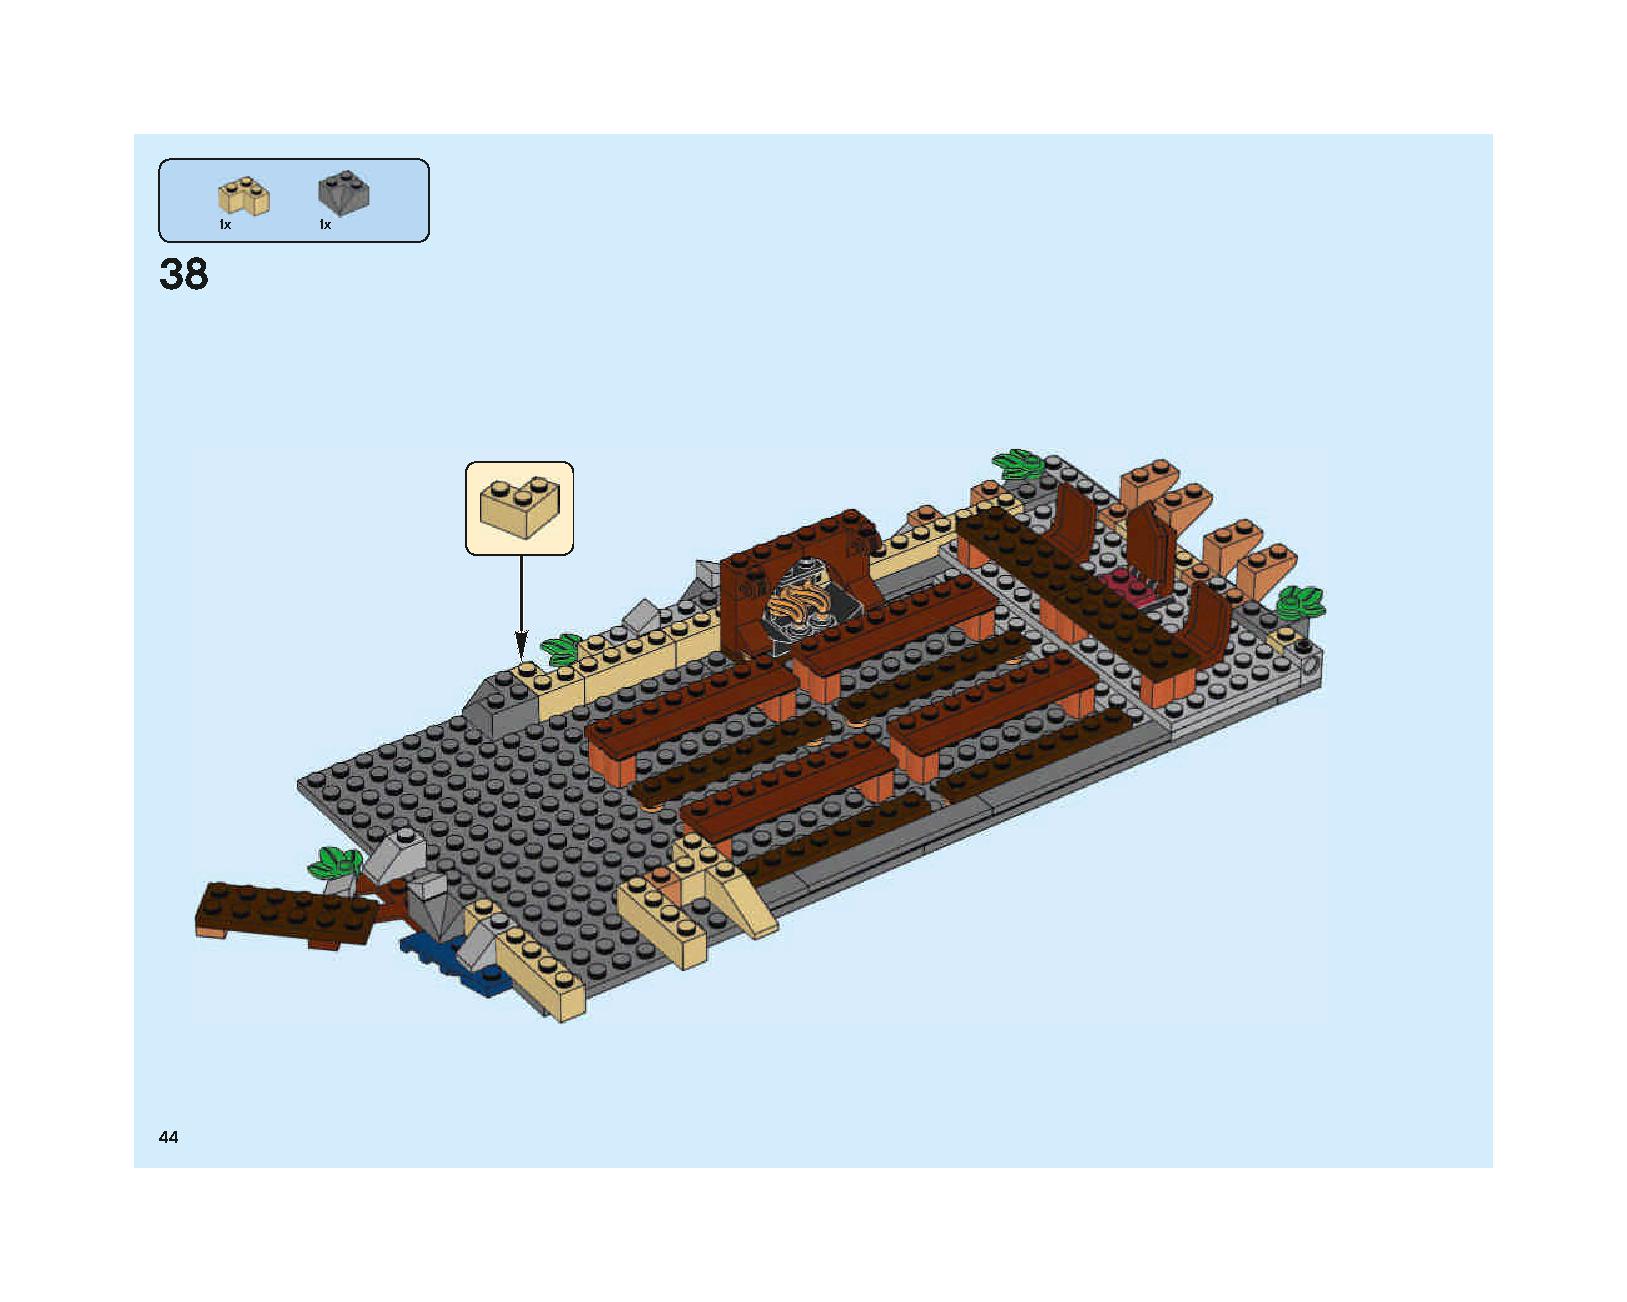 ホグワーツの大広間 75954 レゴの商品情報 レゴの説明書・組立方法 44 page